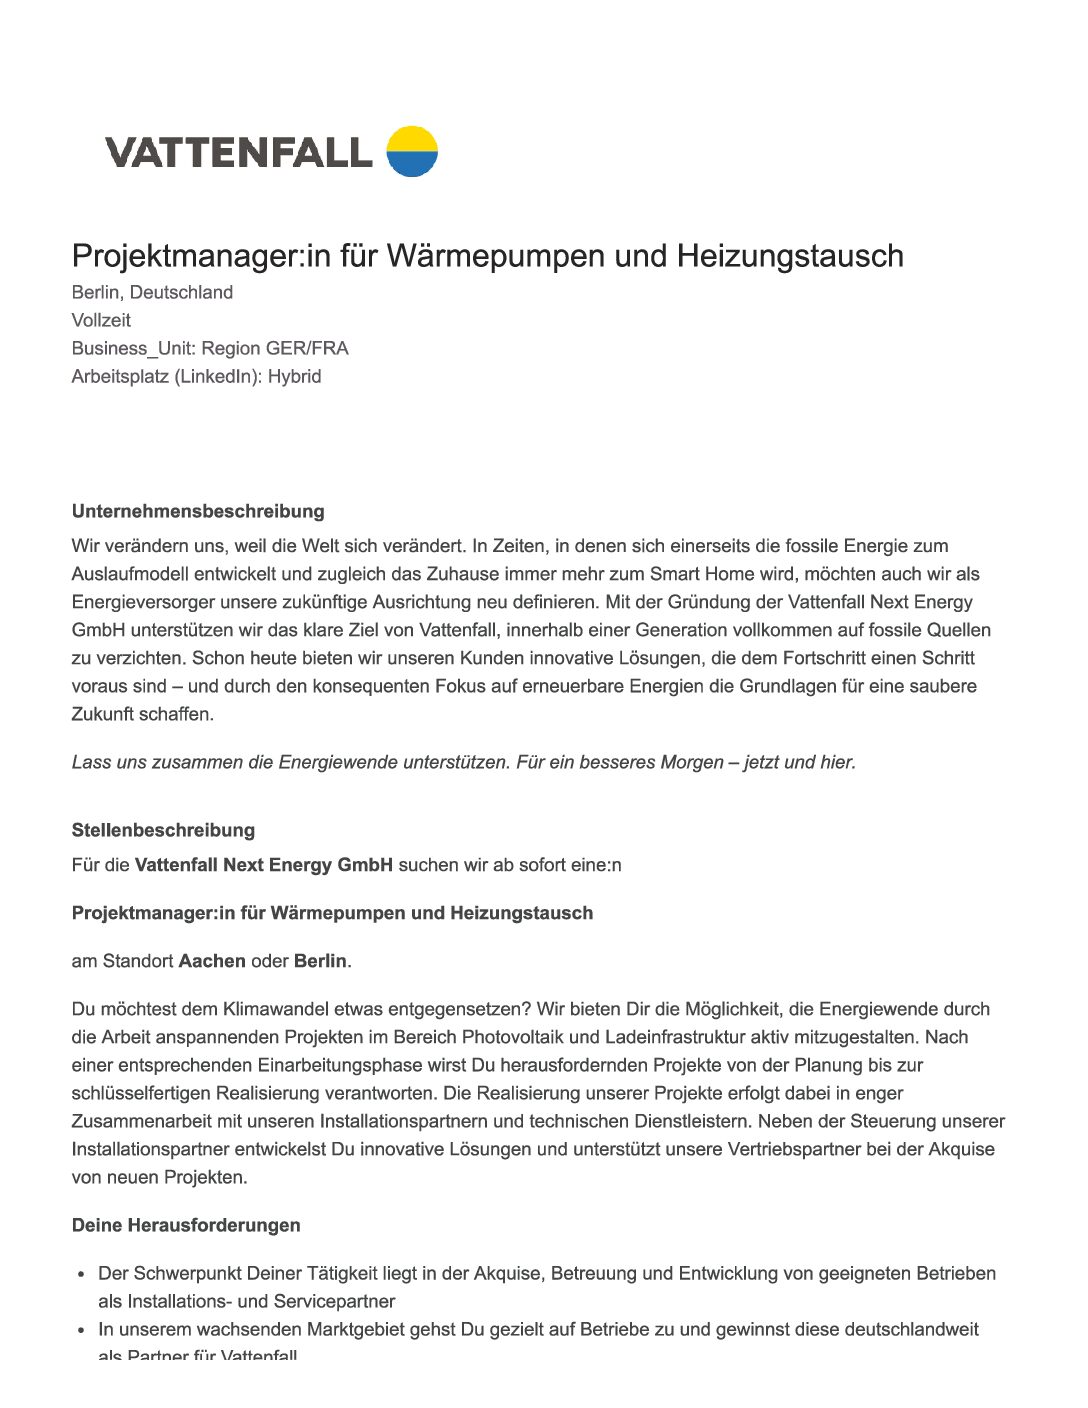 Vattenfall_Projektmanager-fuer-Waermepumpen-und-Heizungstausch-4-pdf  